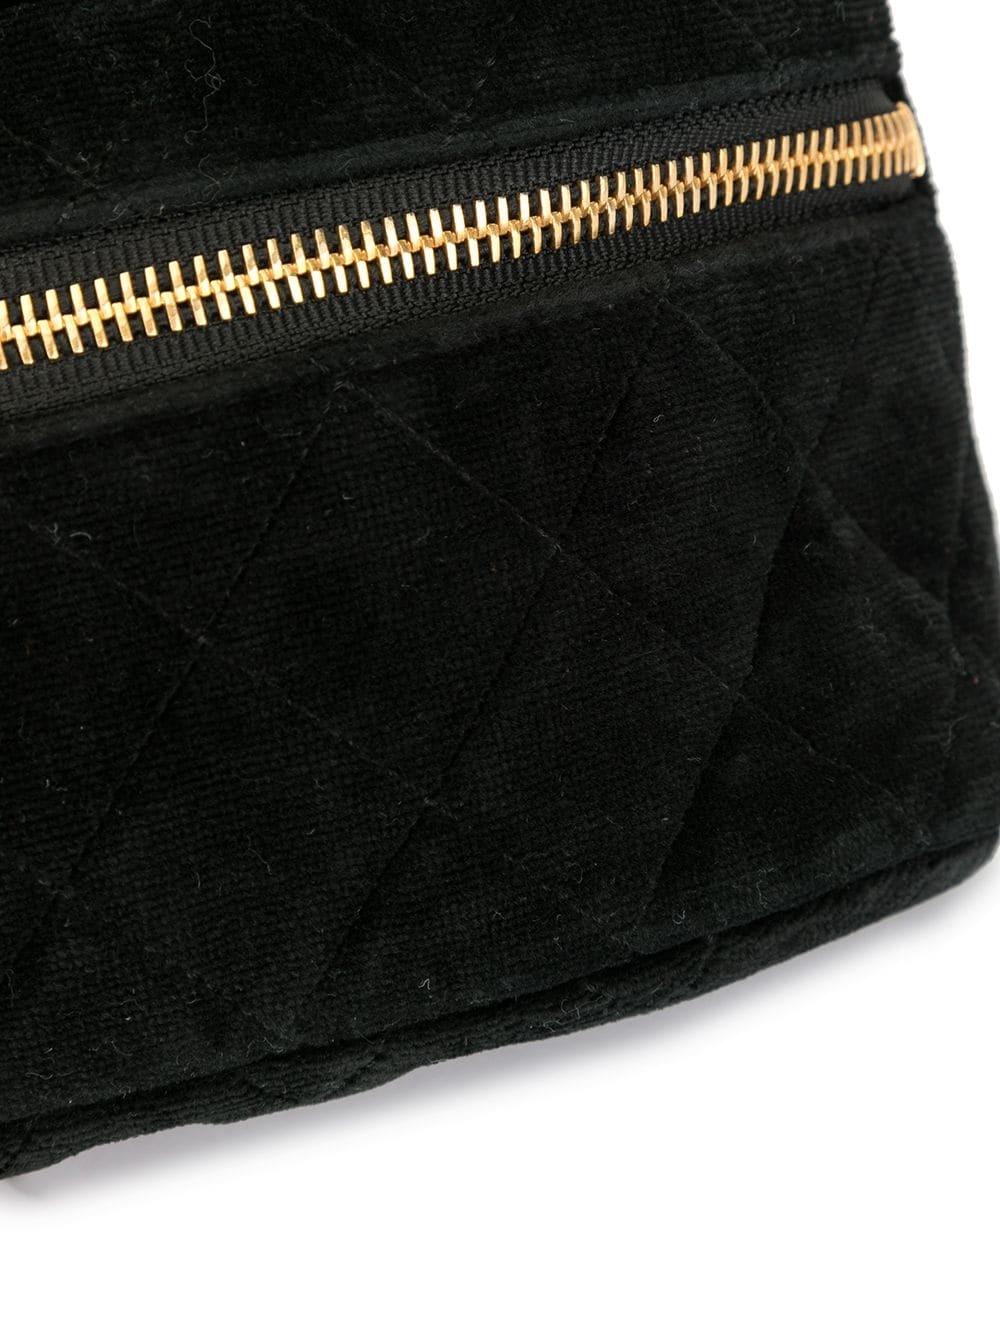 Chanel 1991 Vintage Velvet Quilted Medallion Fanny Pack Waist Belt Bag Rare Bag For Sale 4